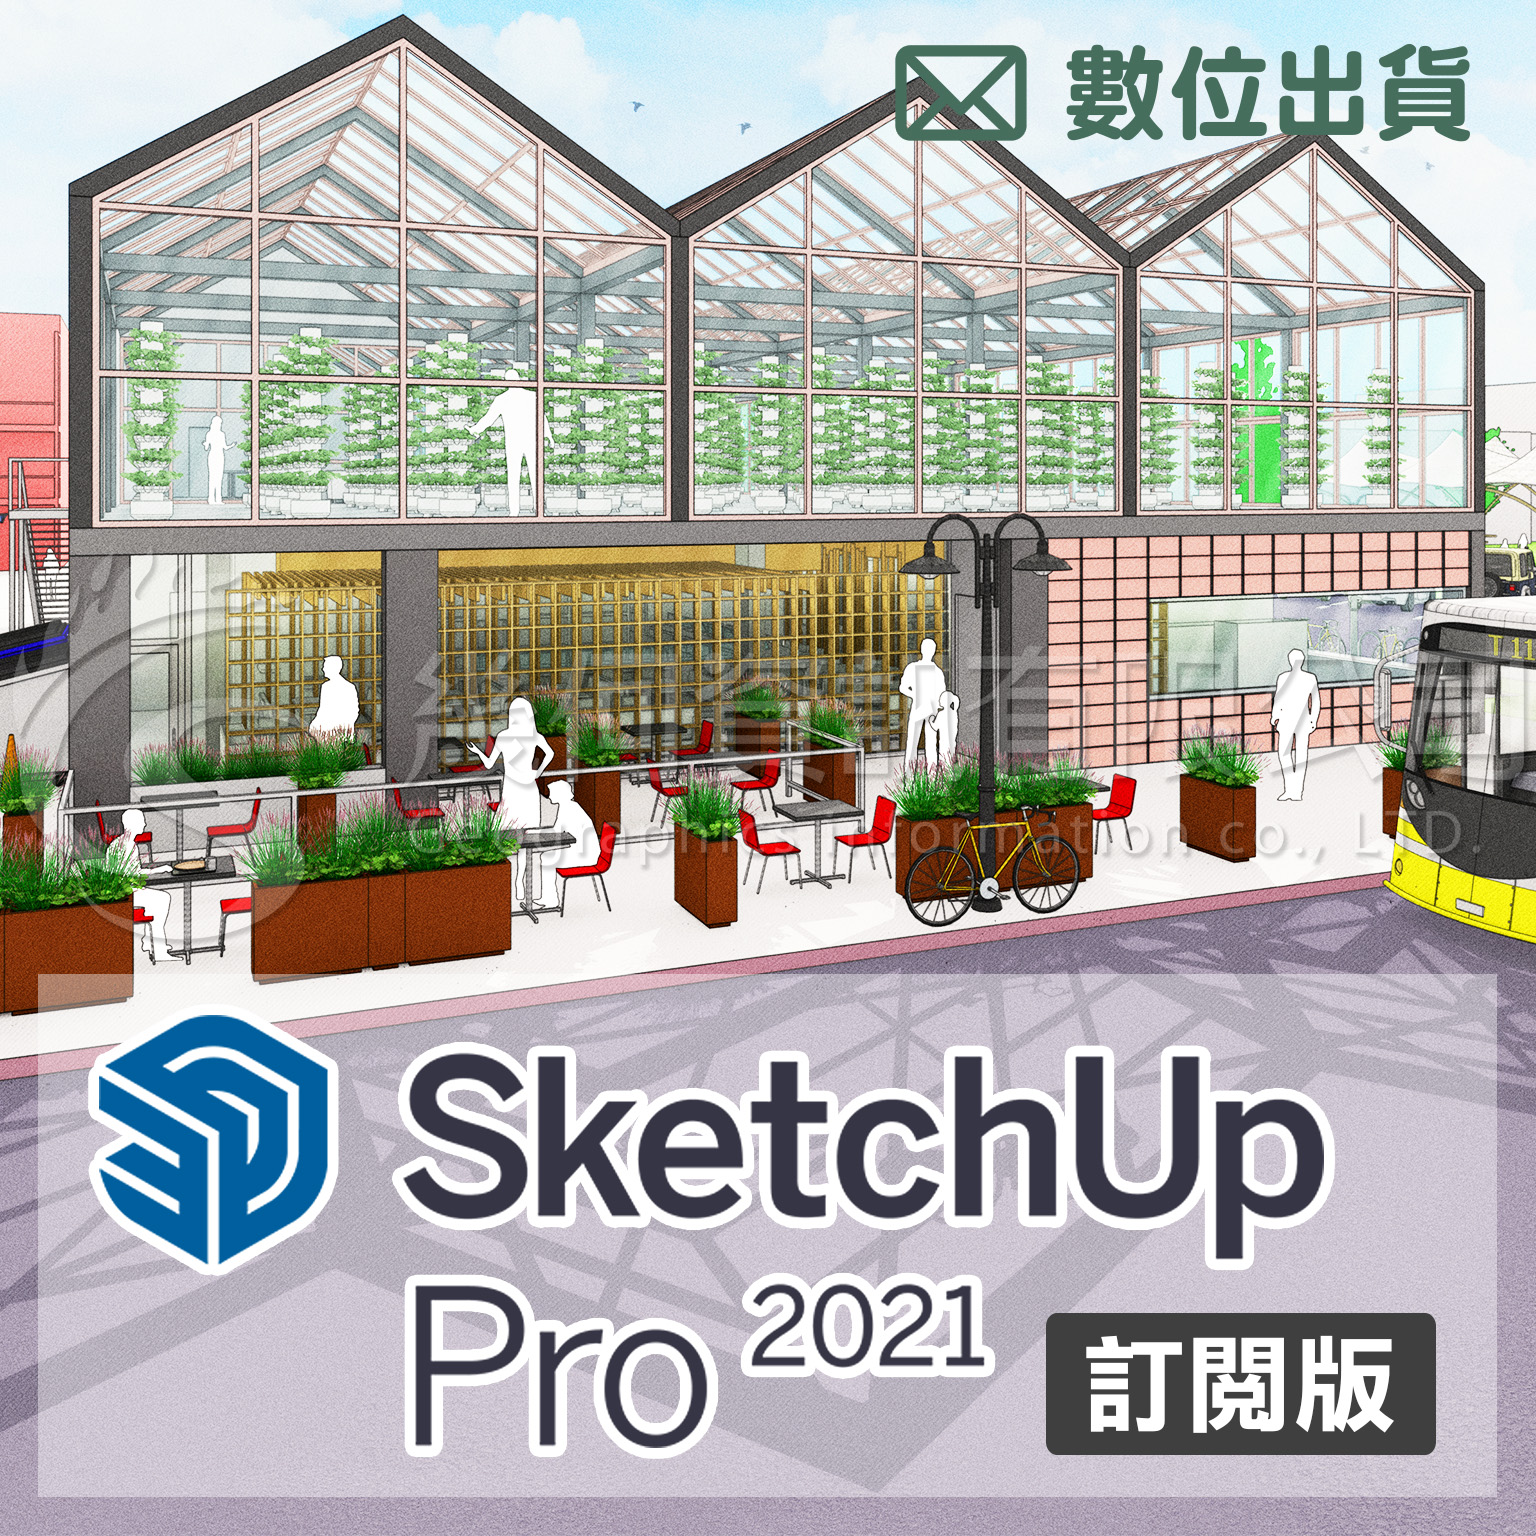 SketchUp Pro 2021